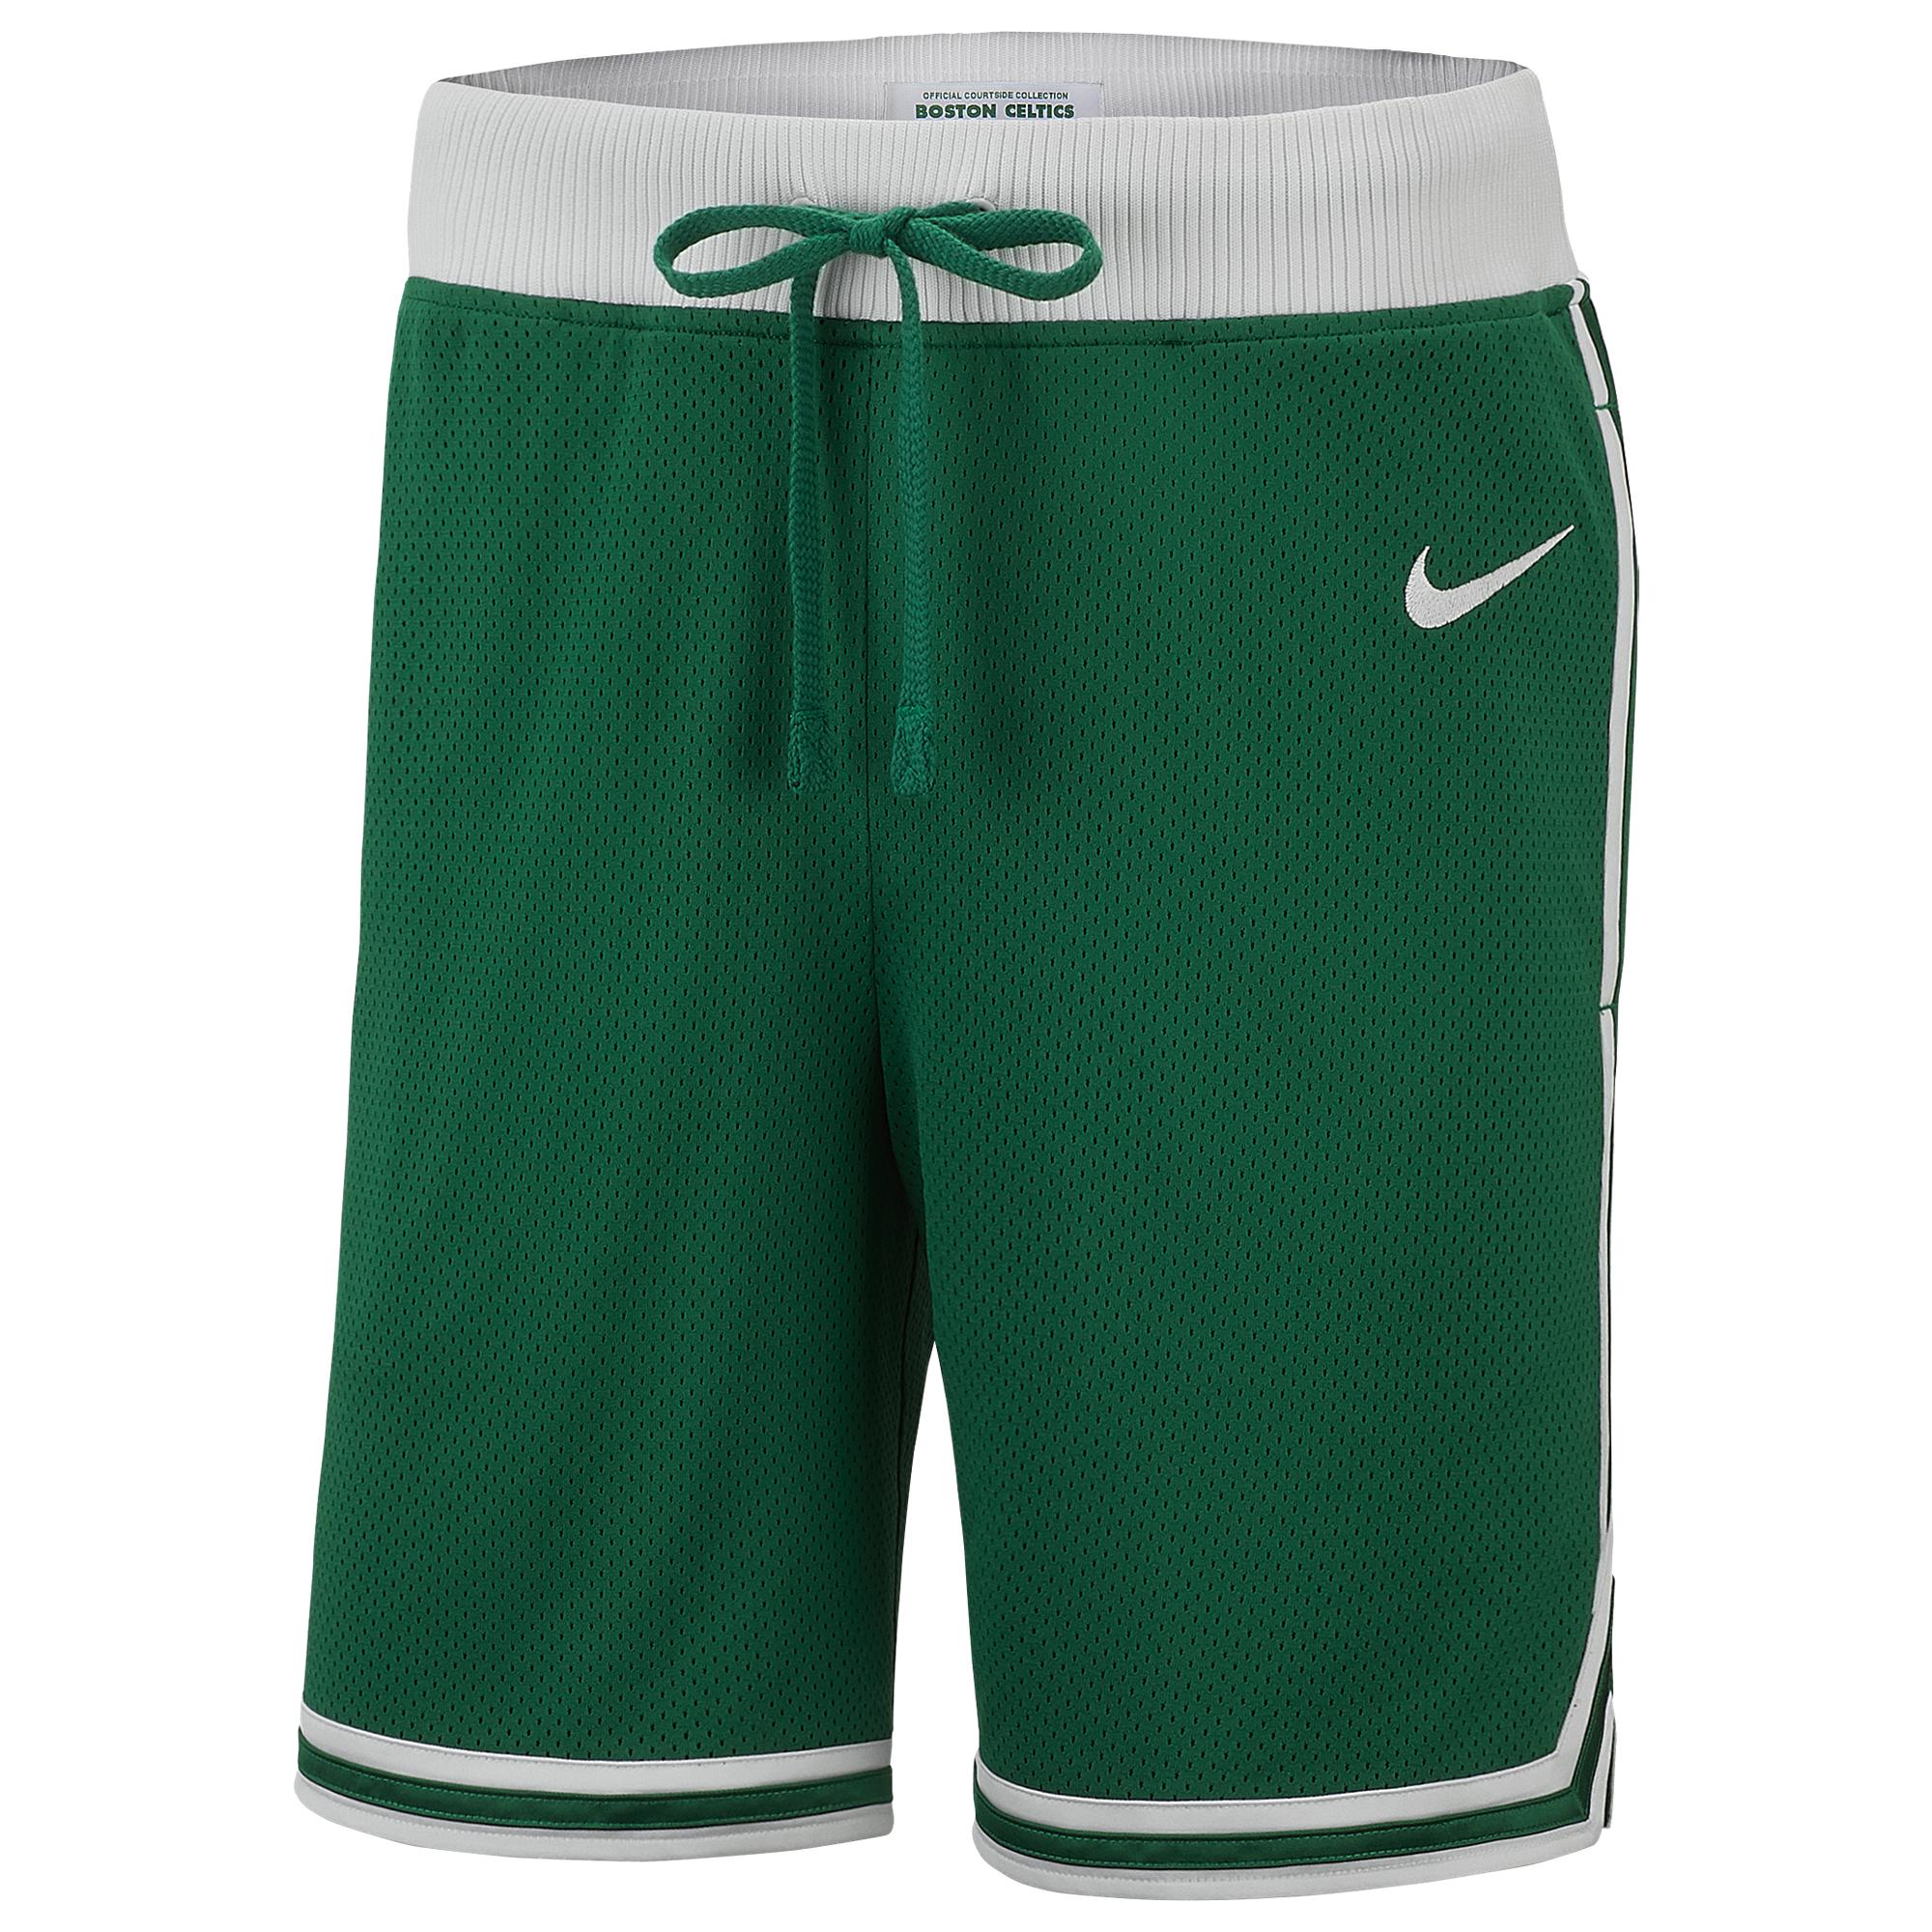 Celtics Shorts : Boston Celtics Nike Men's NBA Shorts. Nike.com